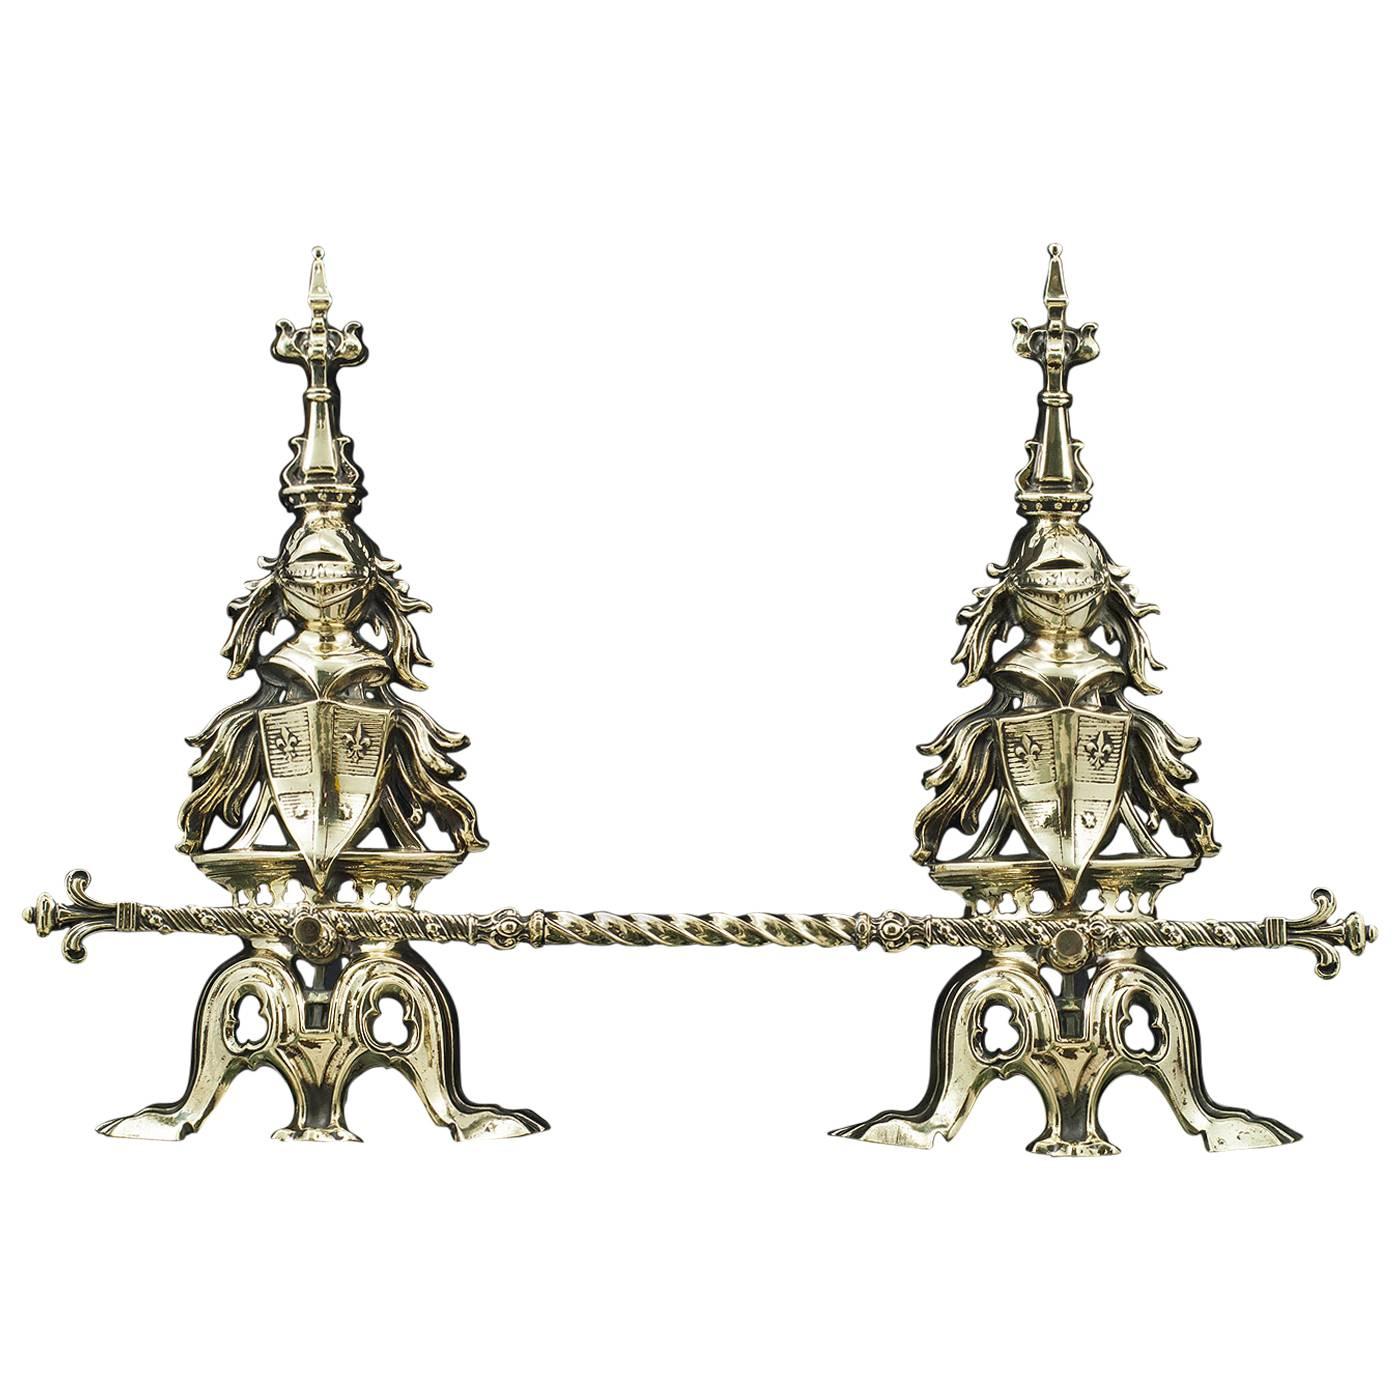 Paar hohe englische antike Messing-Wappenfeuerböcke aus dem 19. Jahrhundert